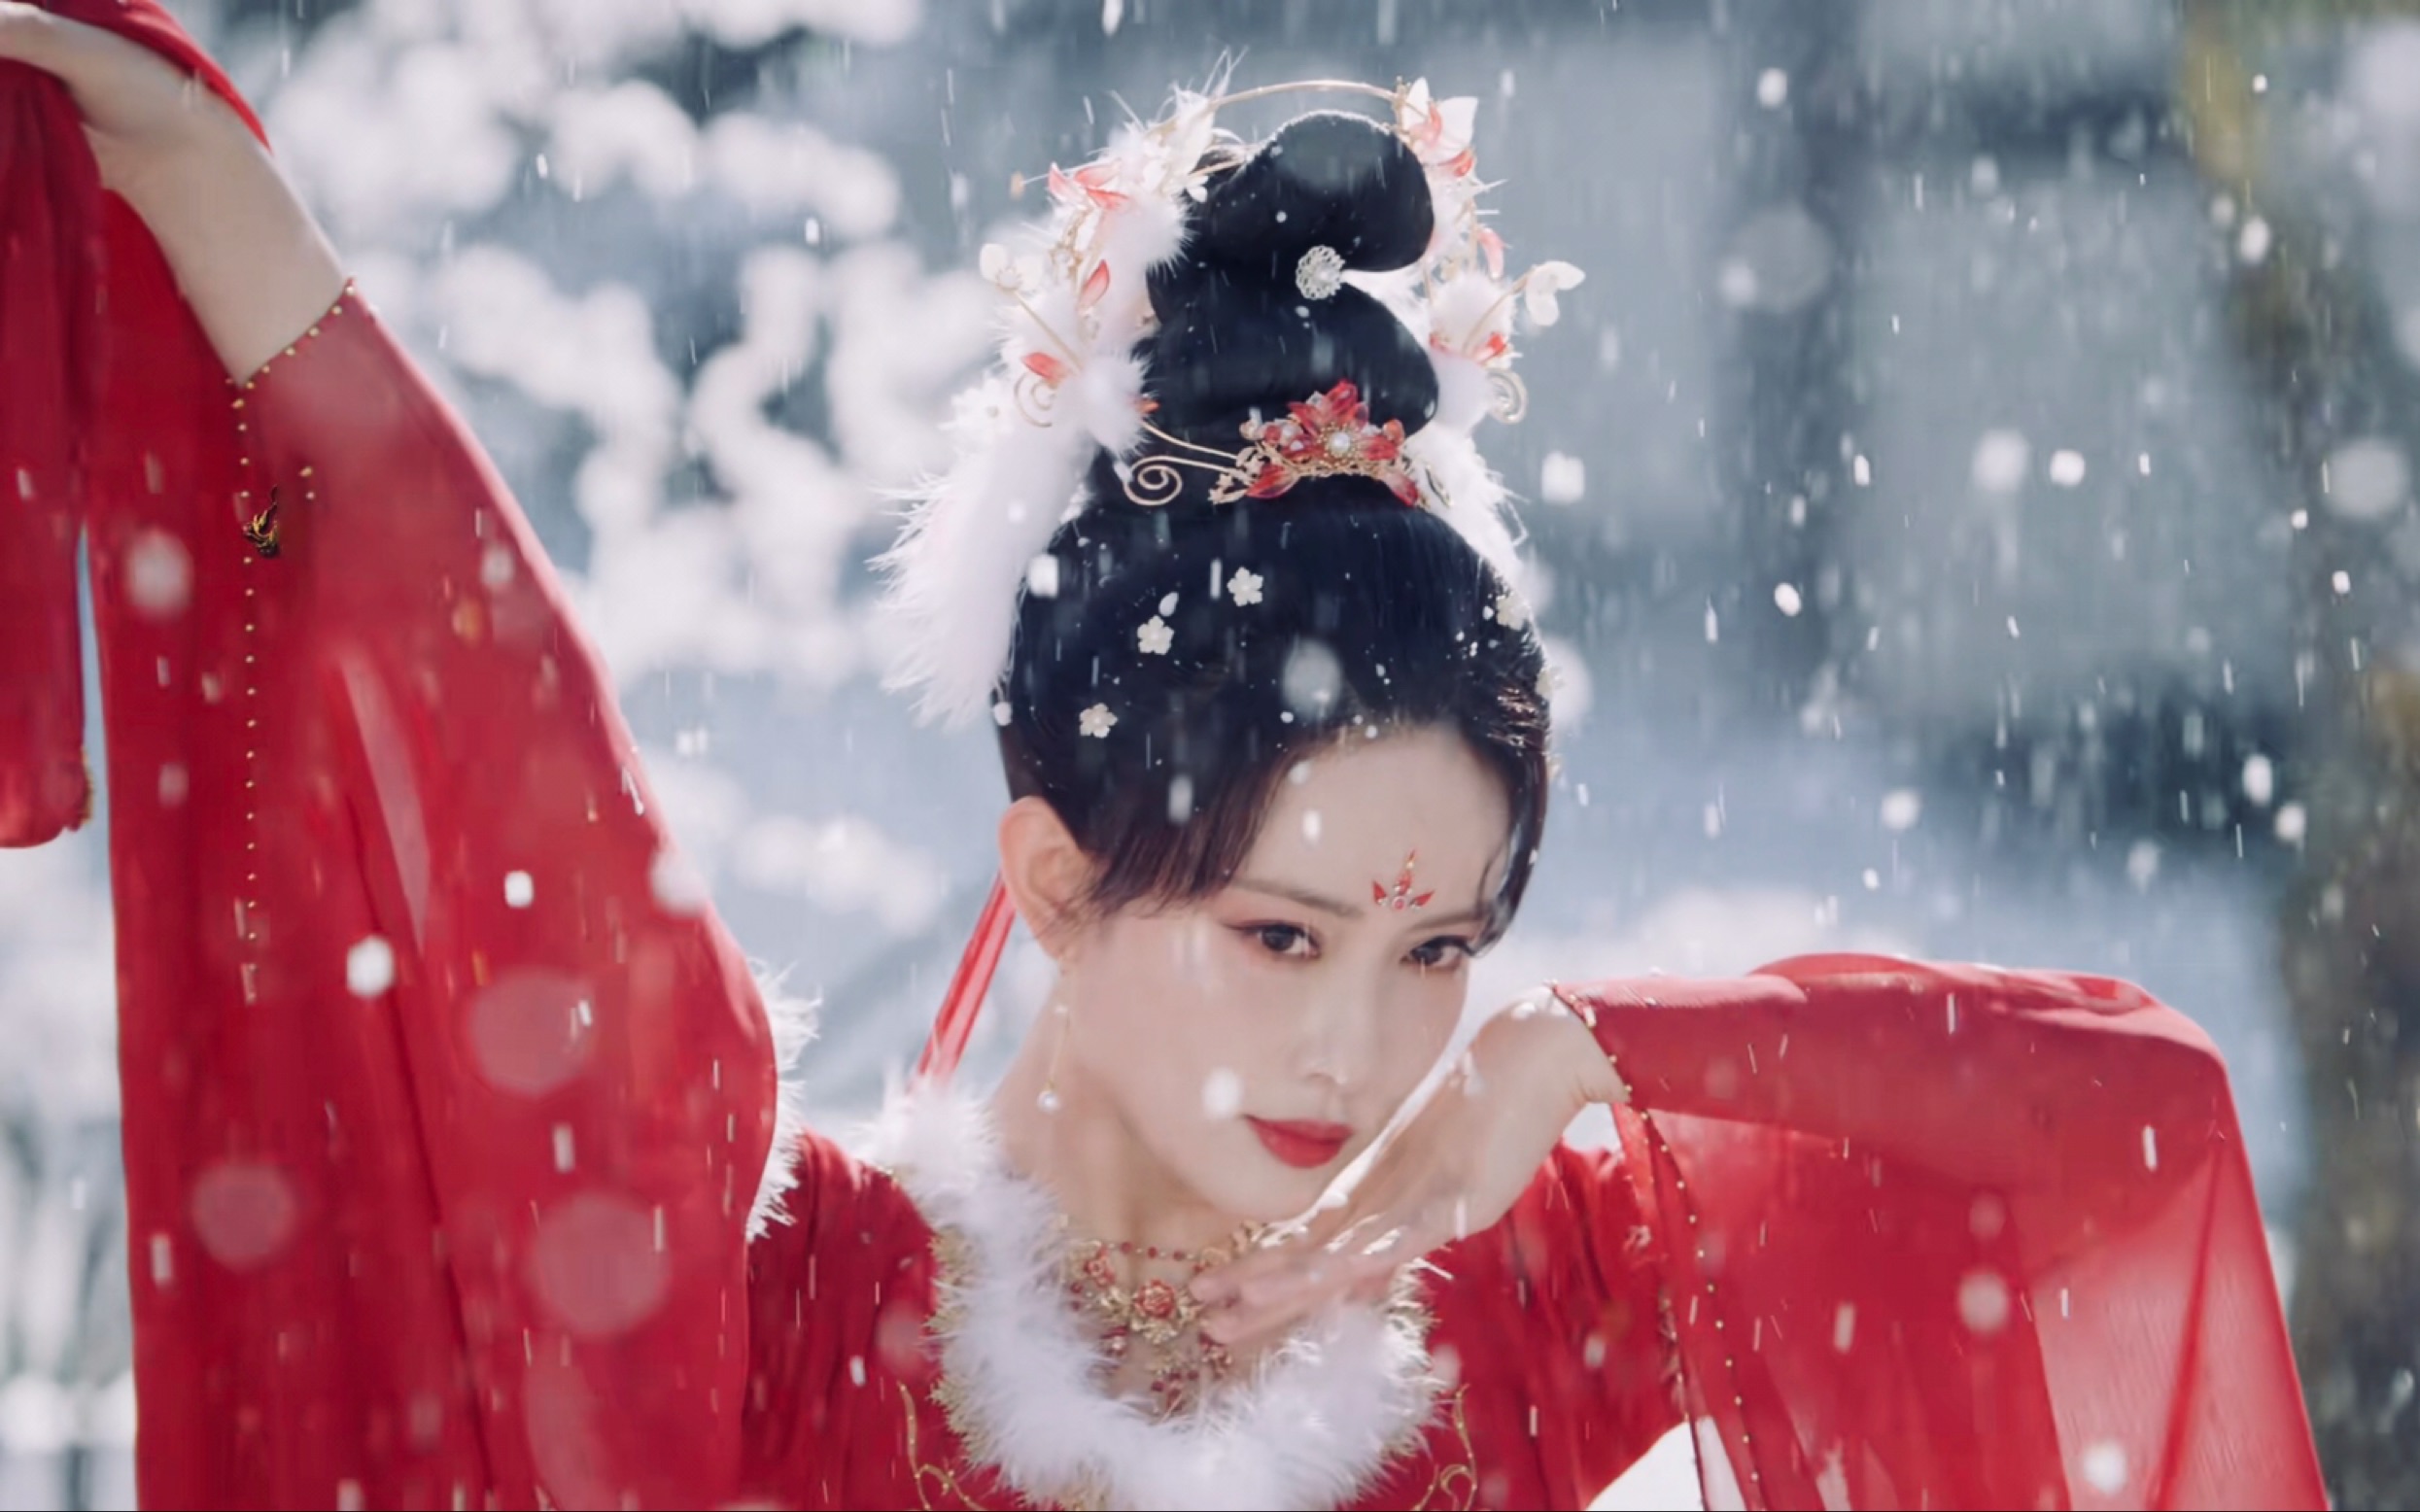 【孟子义】没想到孟姐与古装这么适配!身着红衣雪中舞 惊艳所有人!